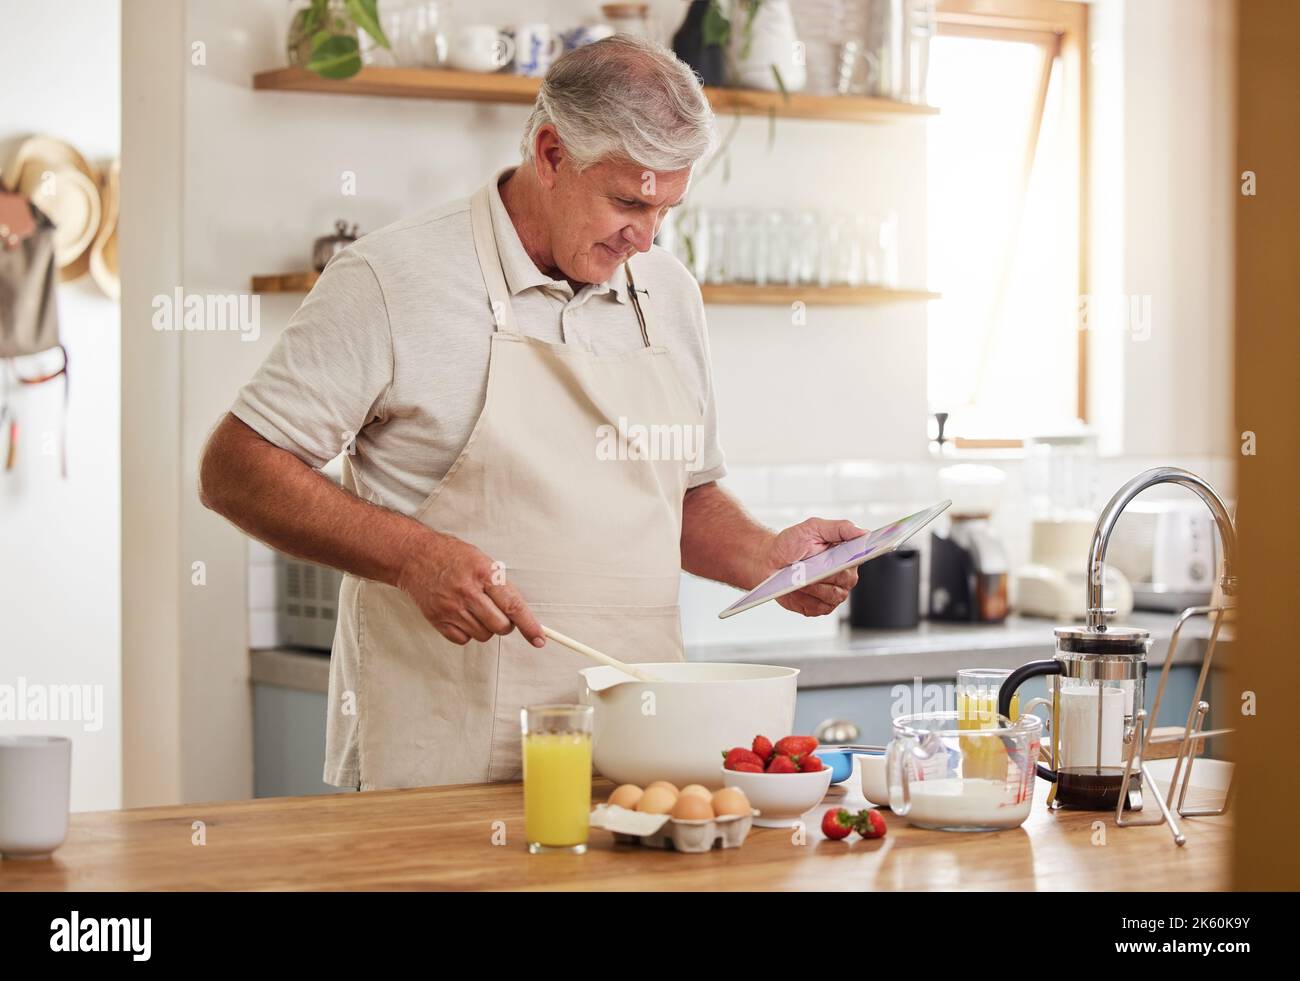 Cuisine, recette et homme senior avec une vidéo en ligne pour le petit déjeuner dans la cuisine de sa maison. Homme âgé lisant des informations sur la nourriture pour la santé Banque D'Images